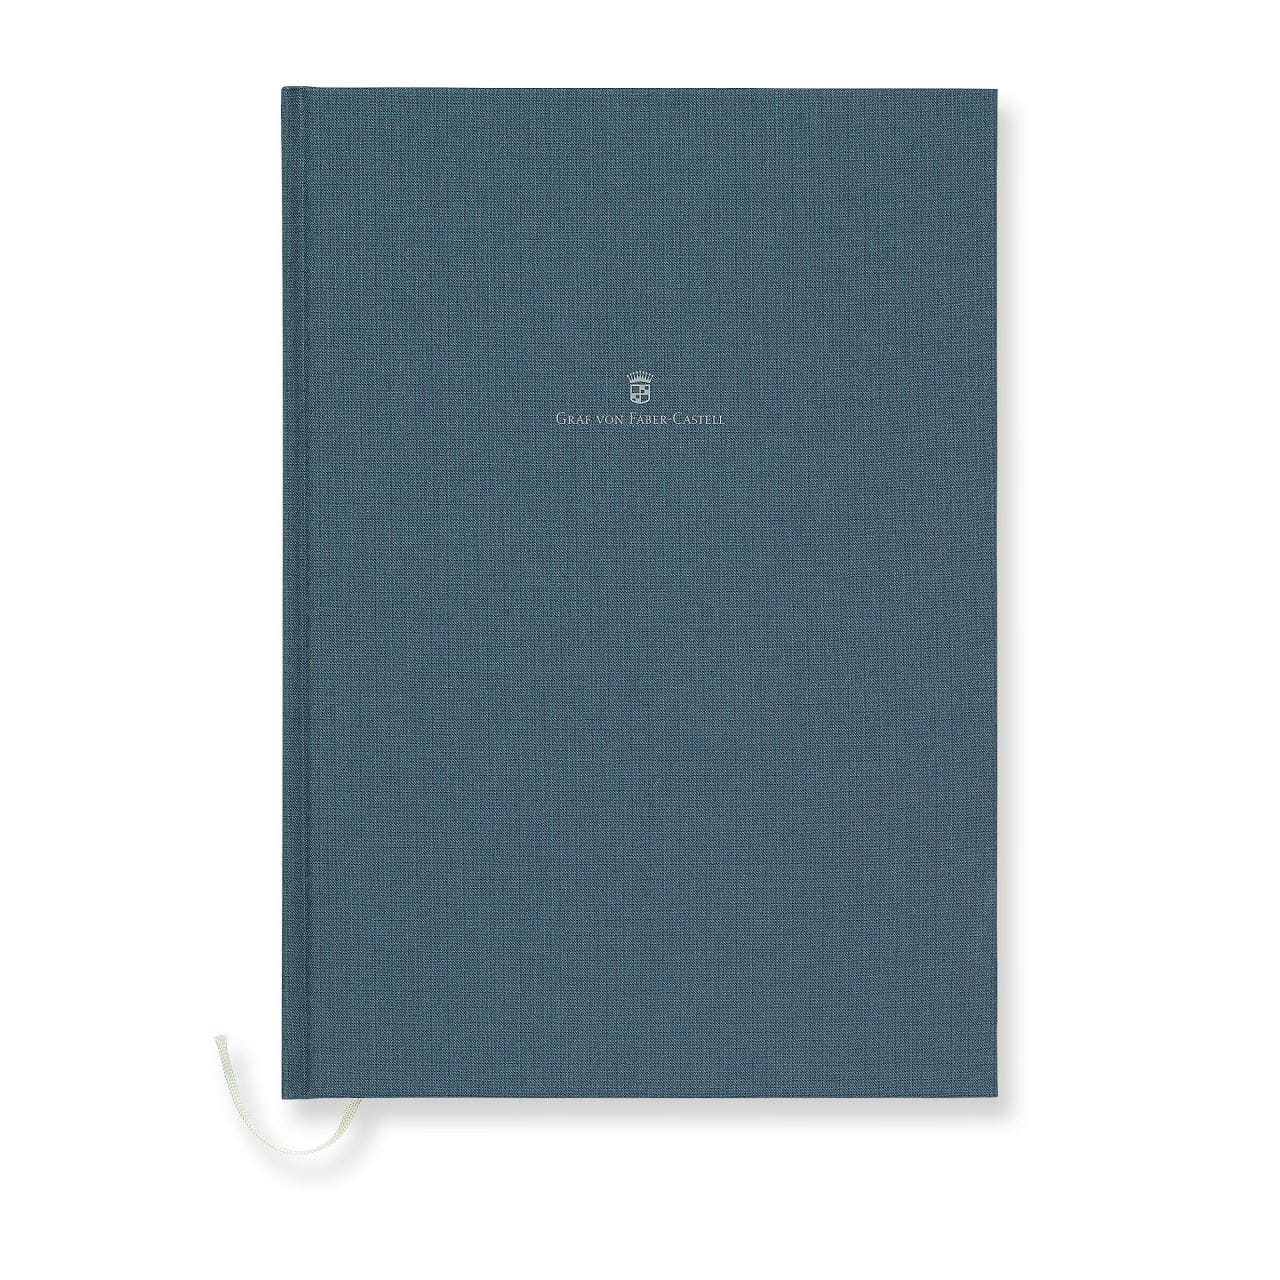 Graf-von-Faber-Castell - Buch mit Leineneinband A4 Night Blue